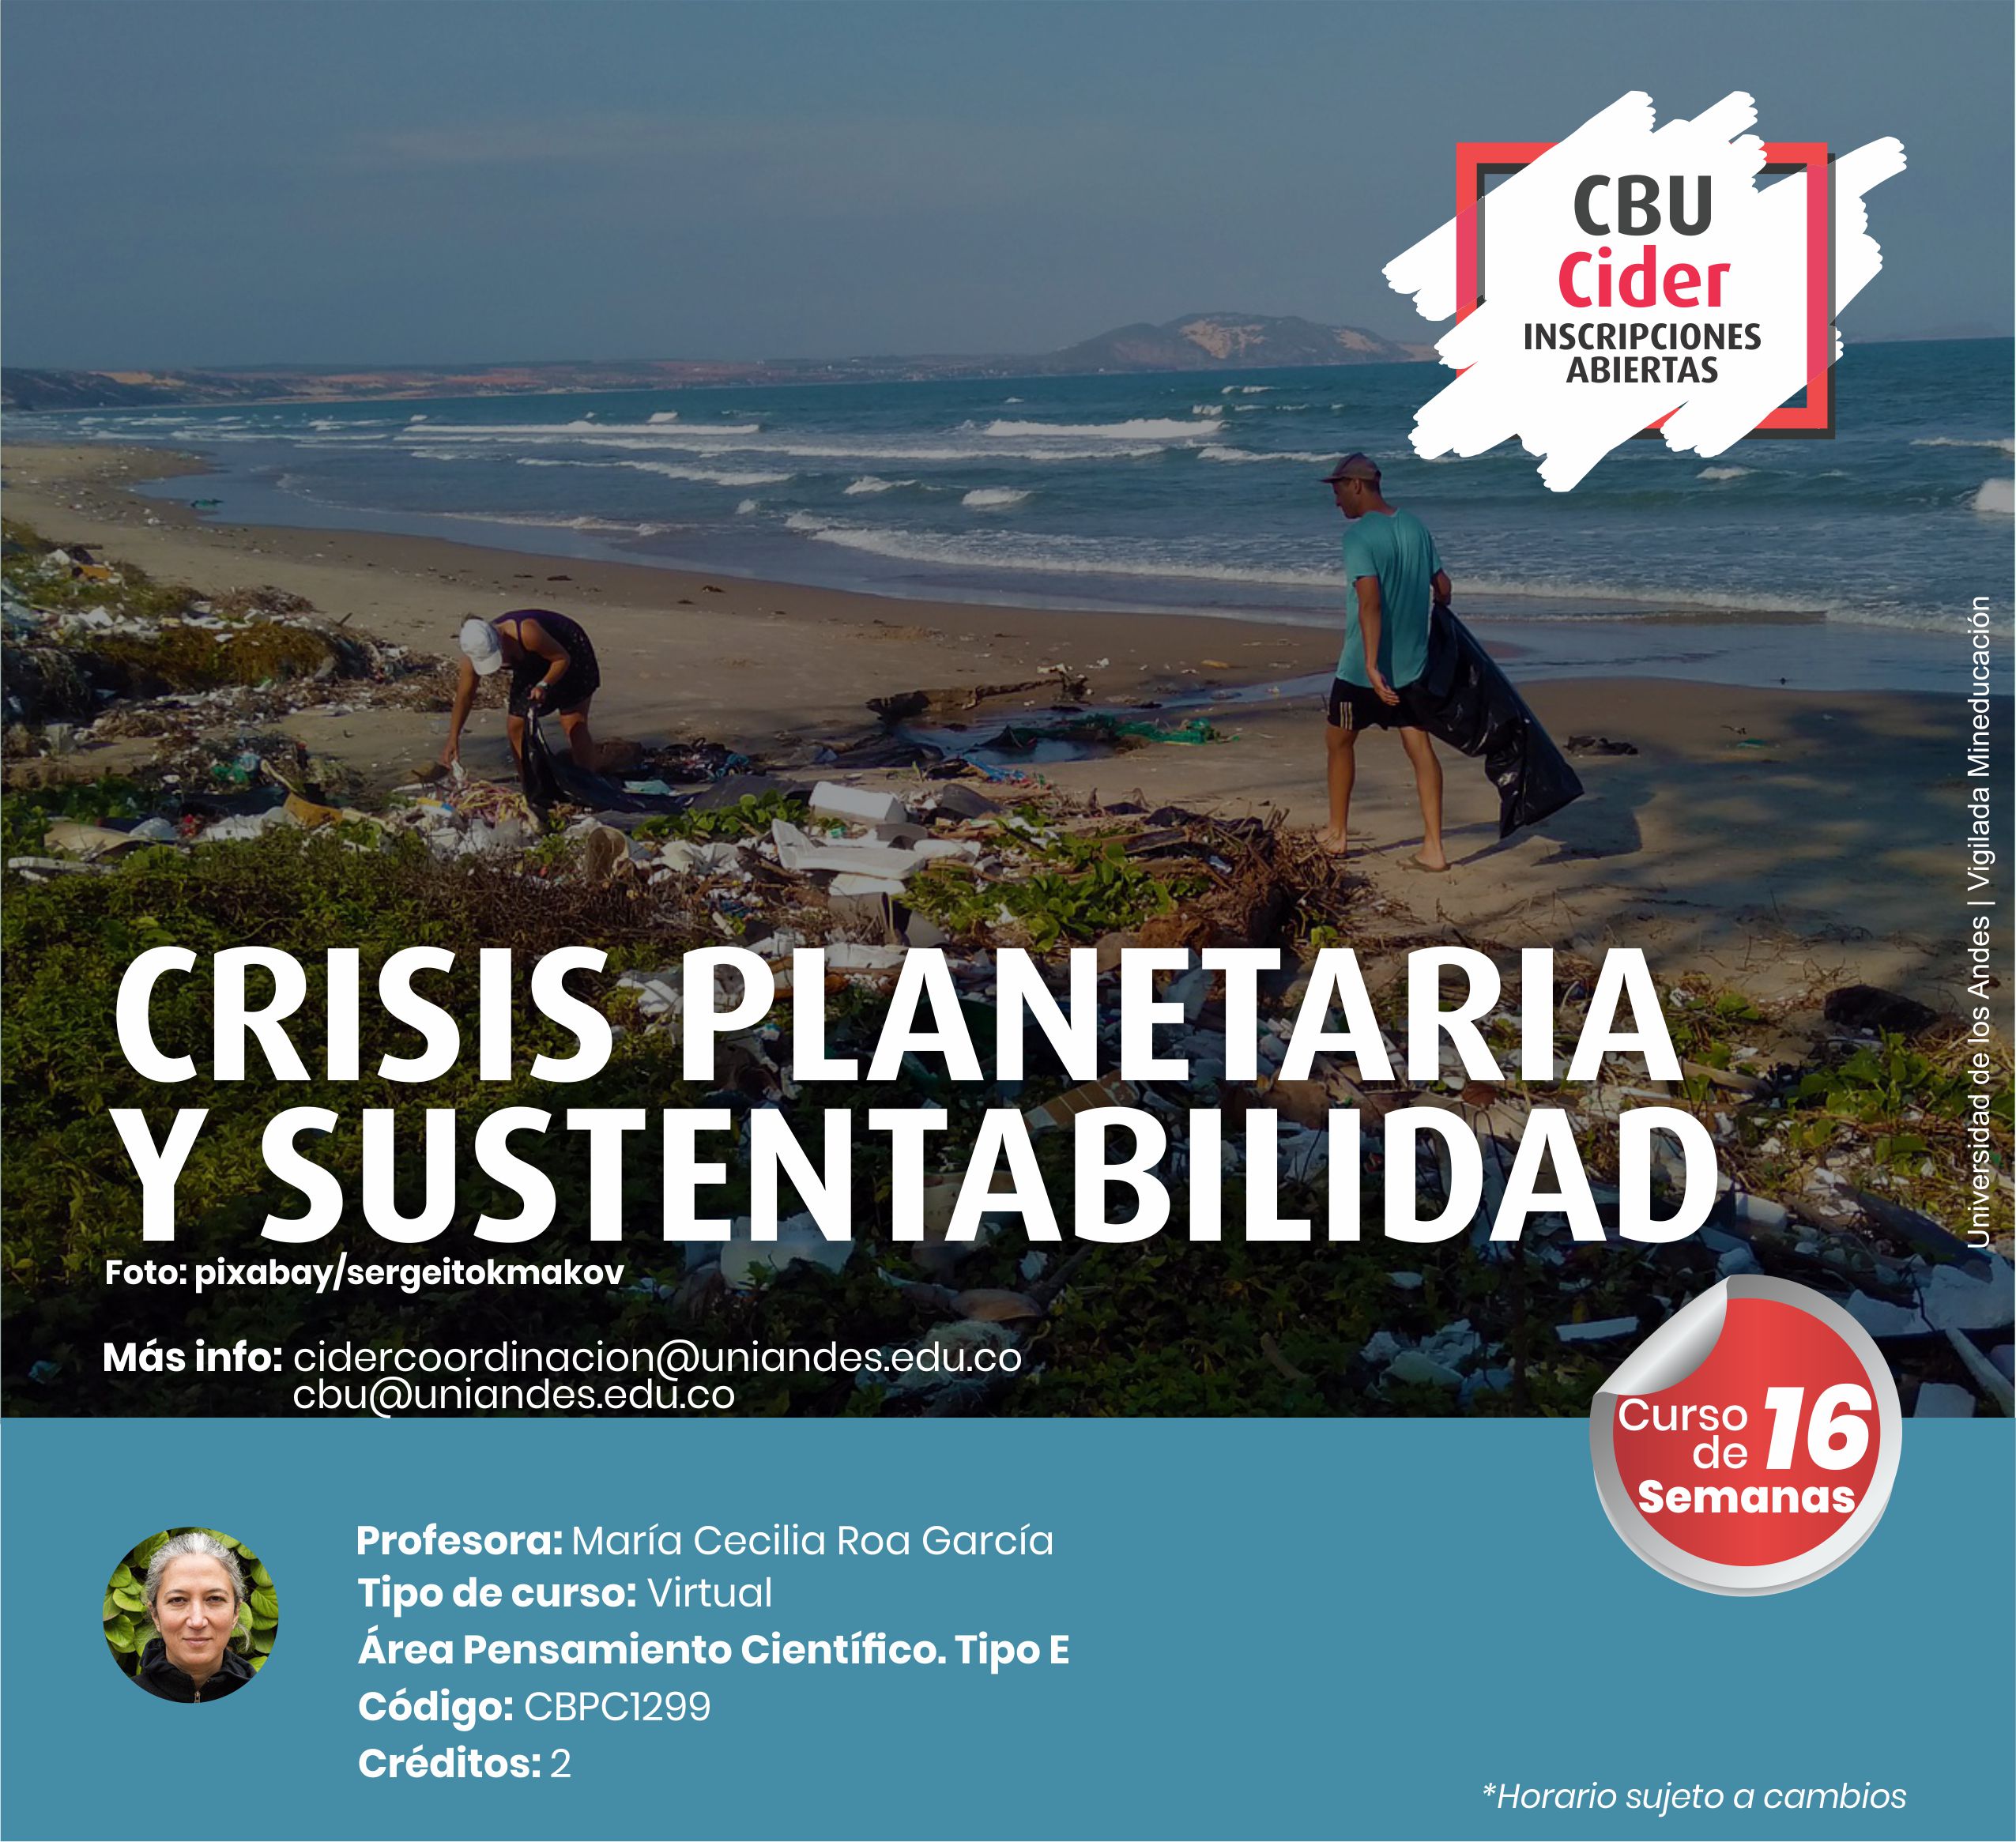 CBU: Crisis planetaria y sustentabilidad - Cider | Uniandes